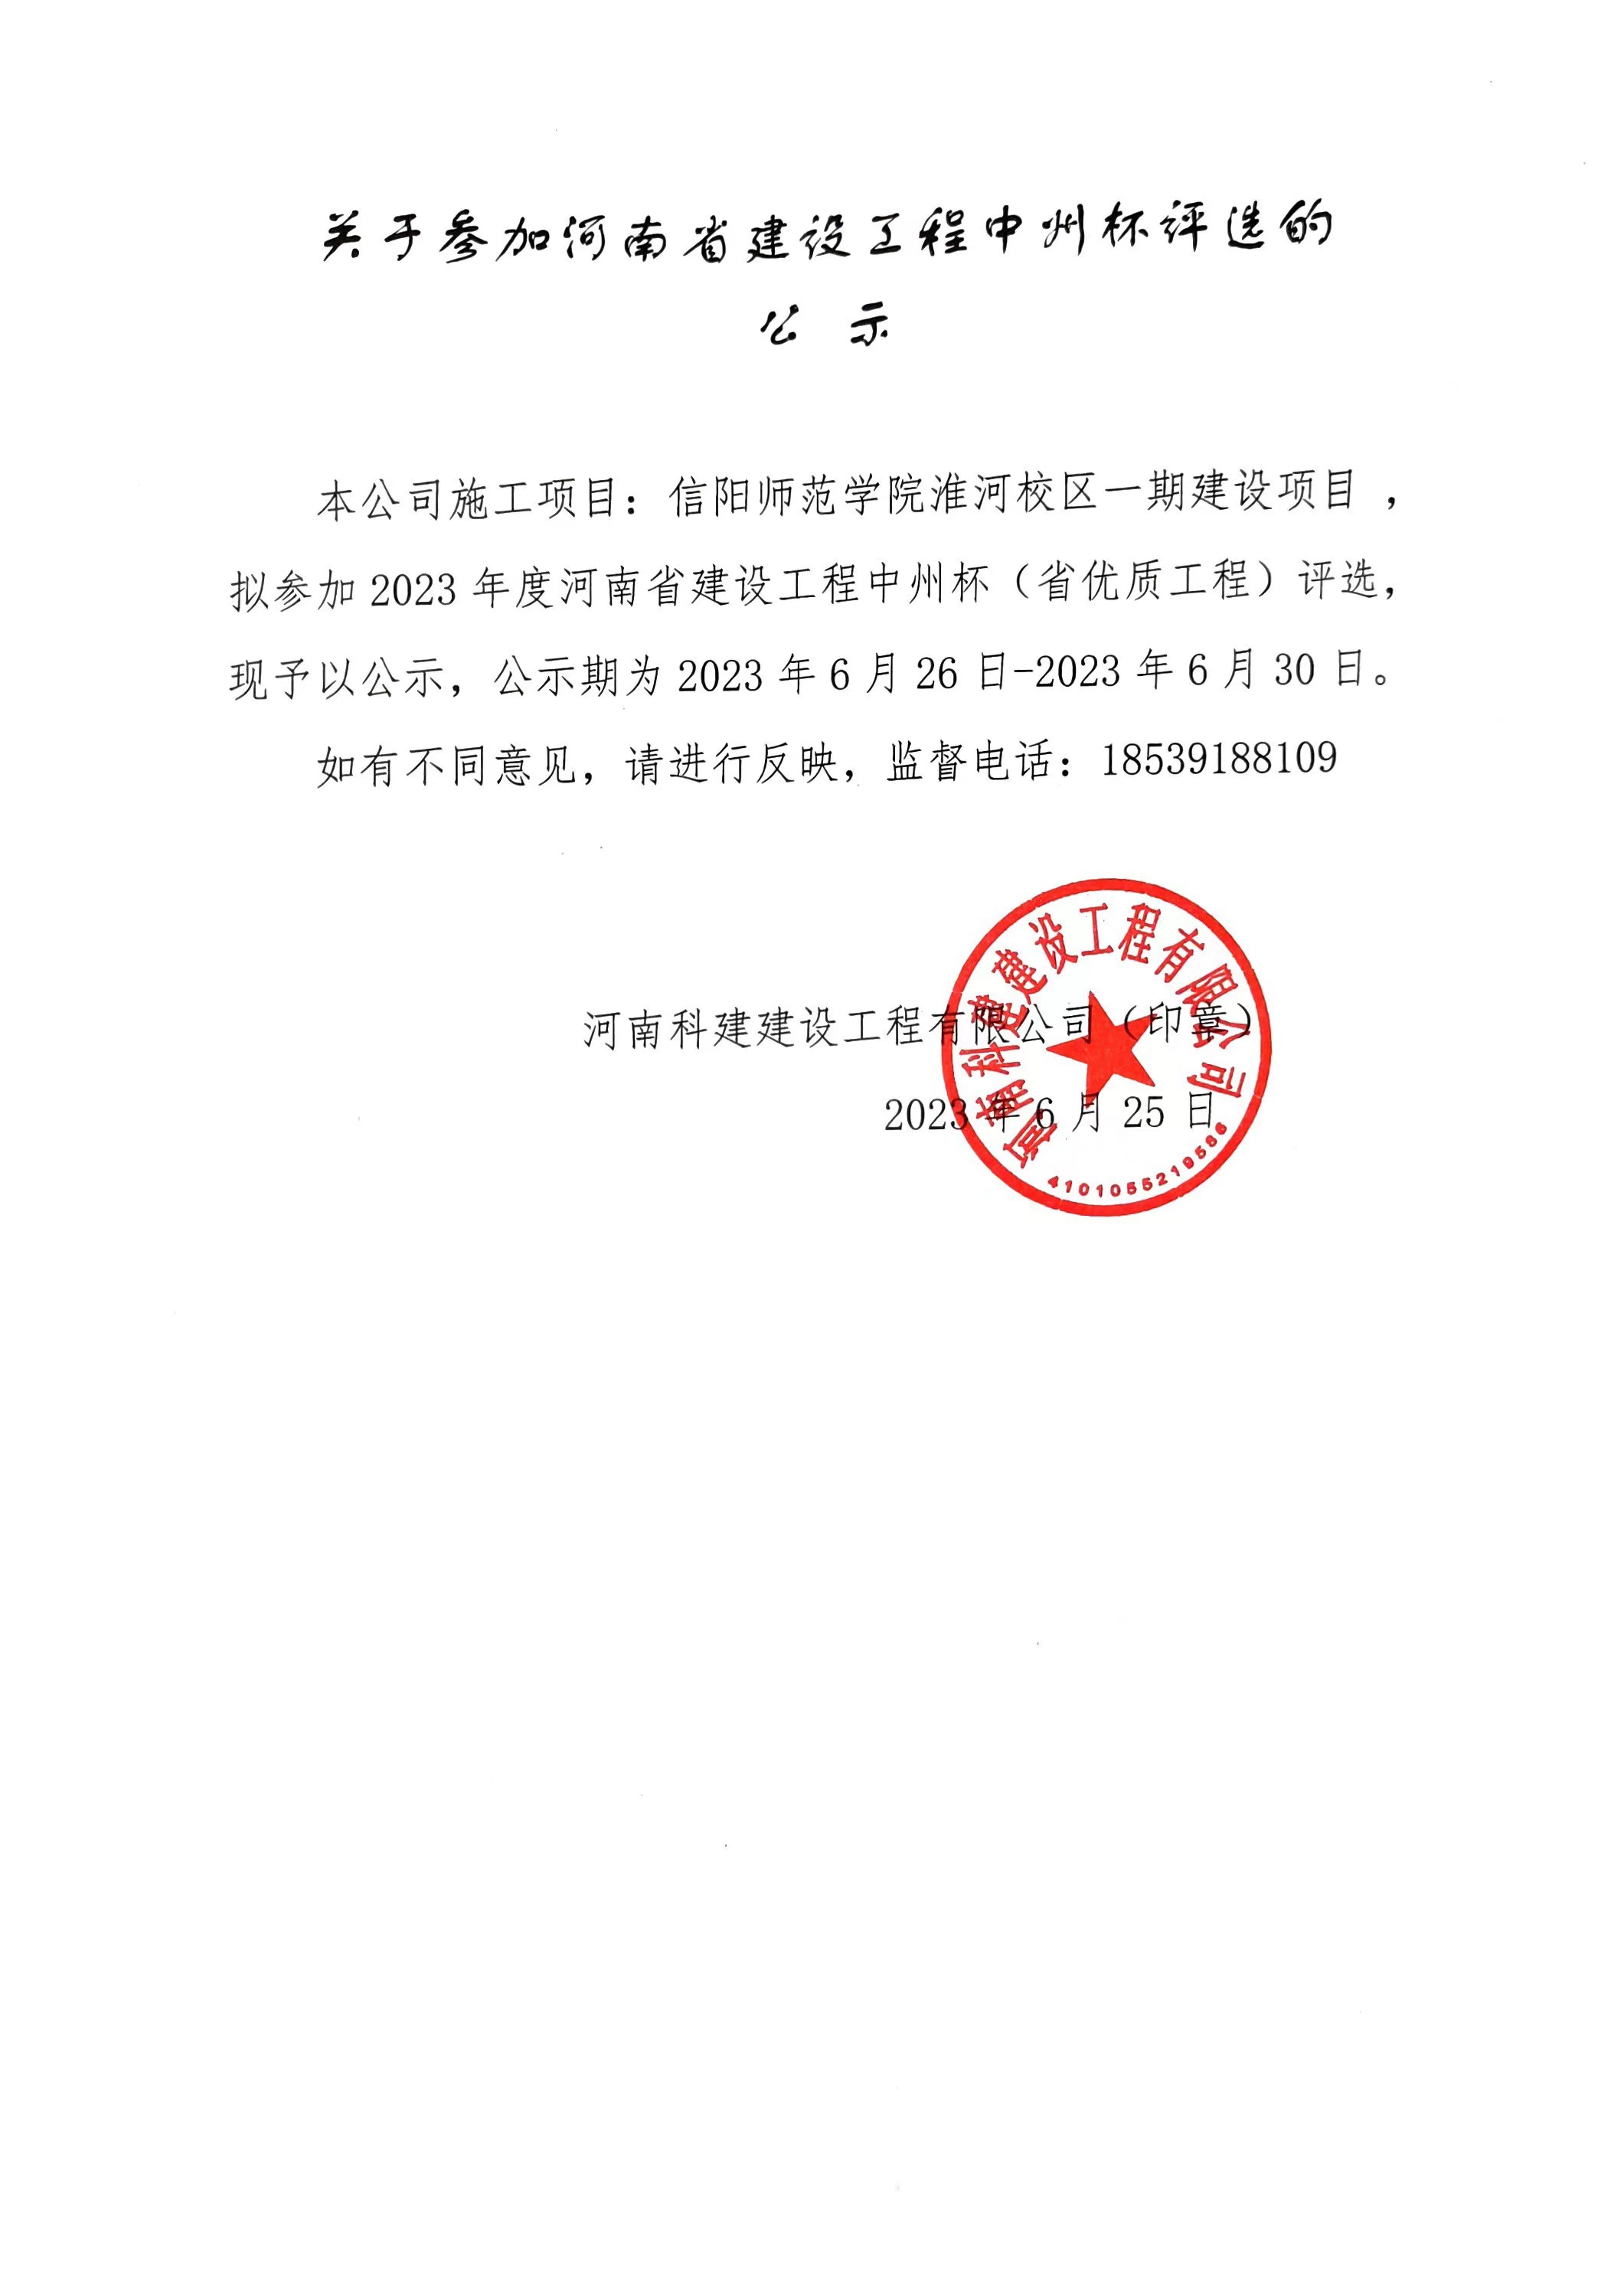 关于参加河南省建设工程中州杯评选的公示